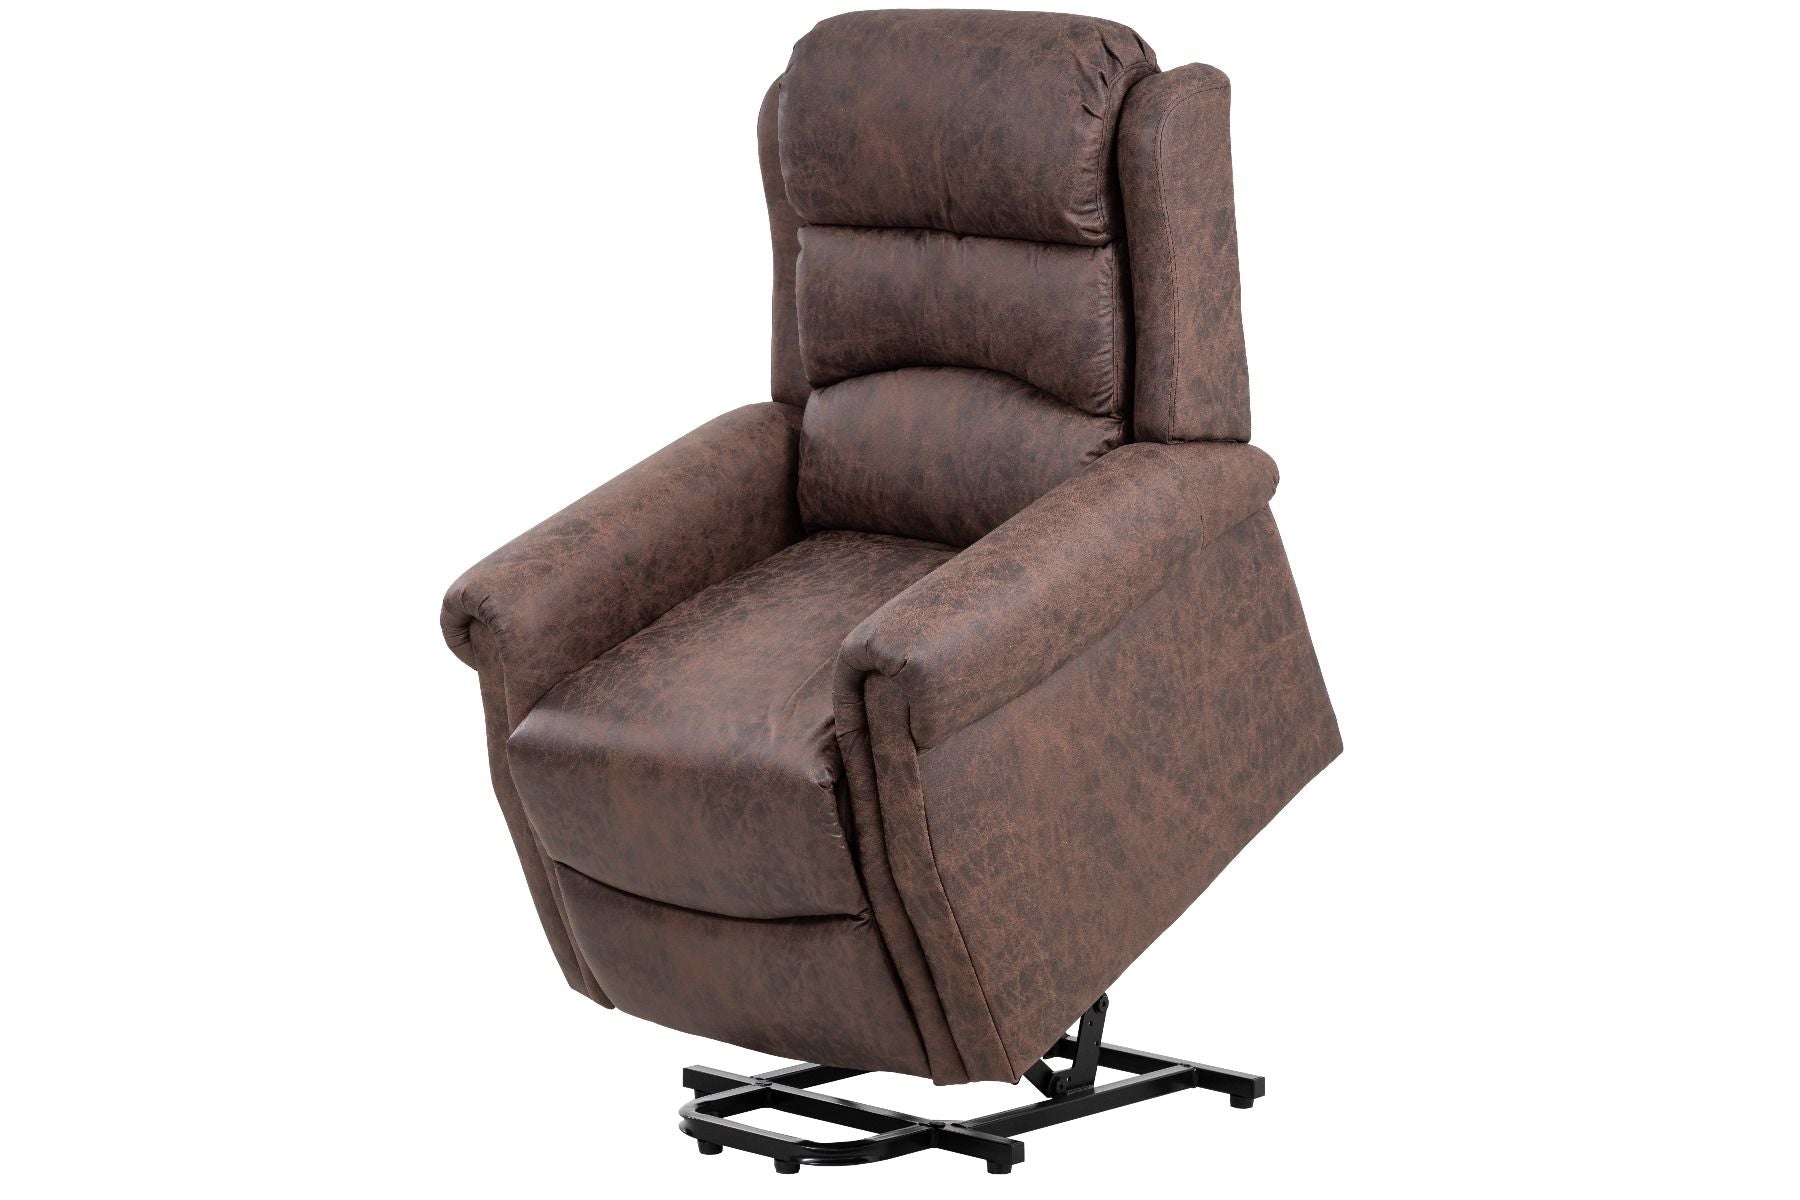 Willis Dual Motor Lift & Tilt Recliner Chair - Antique Brown